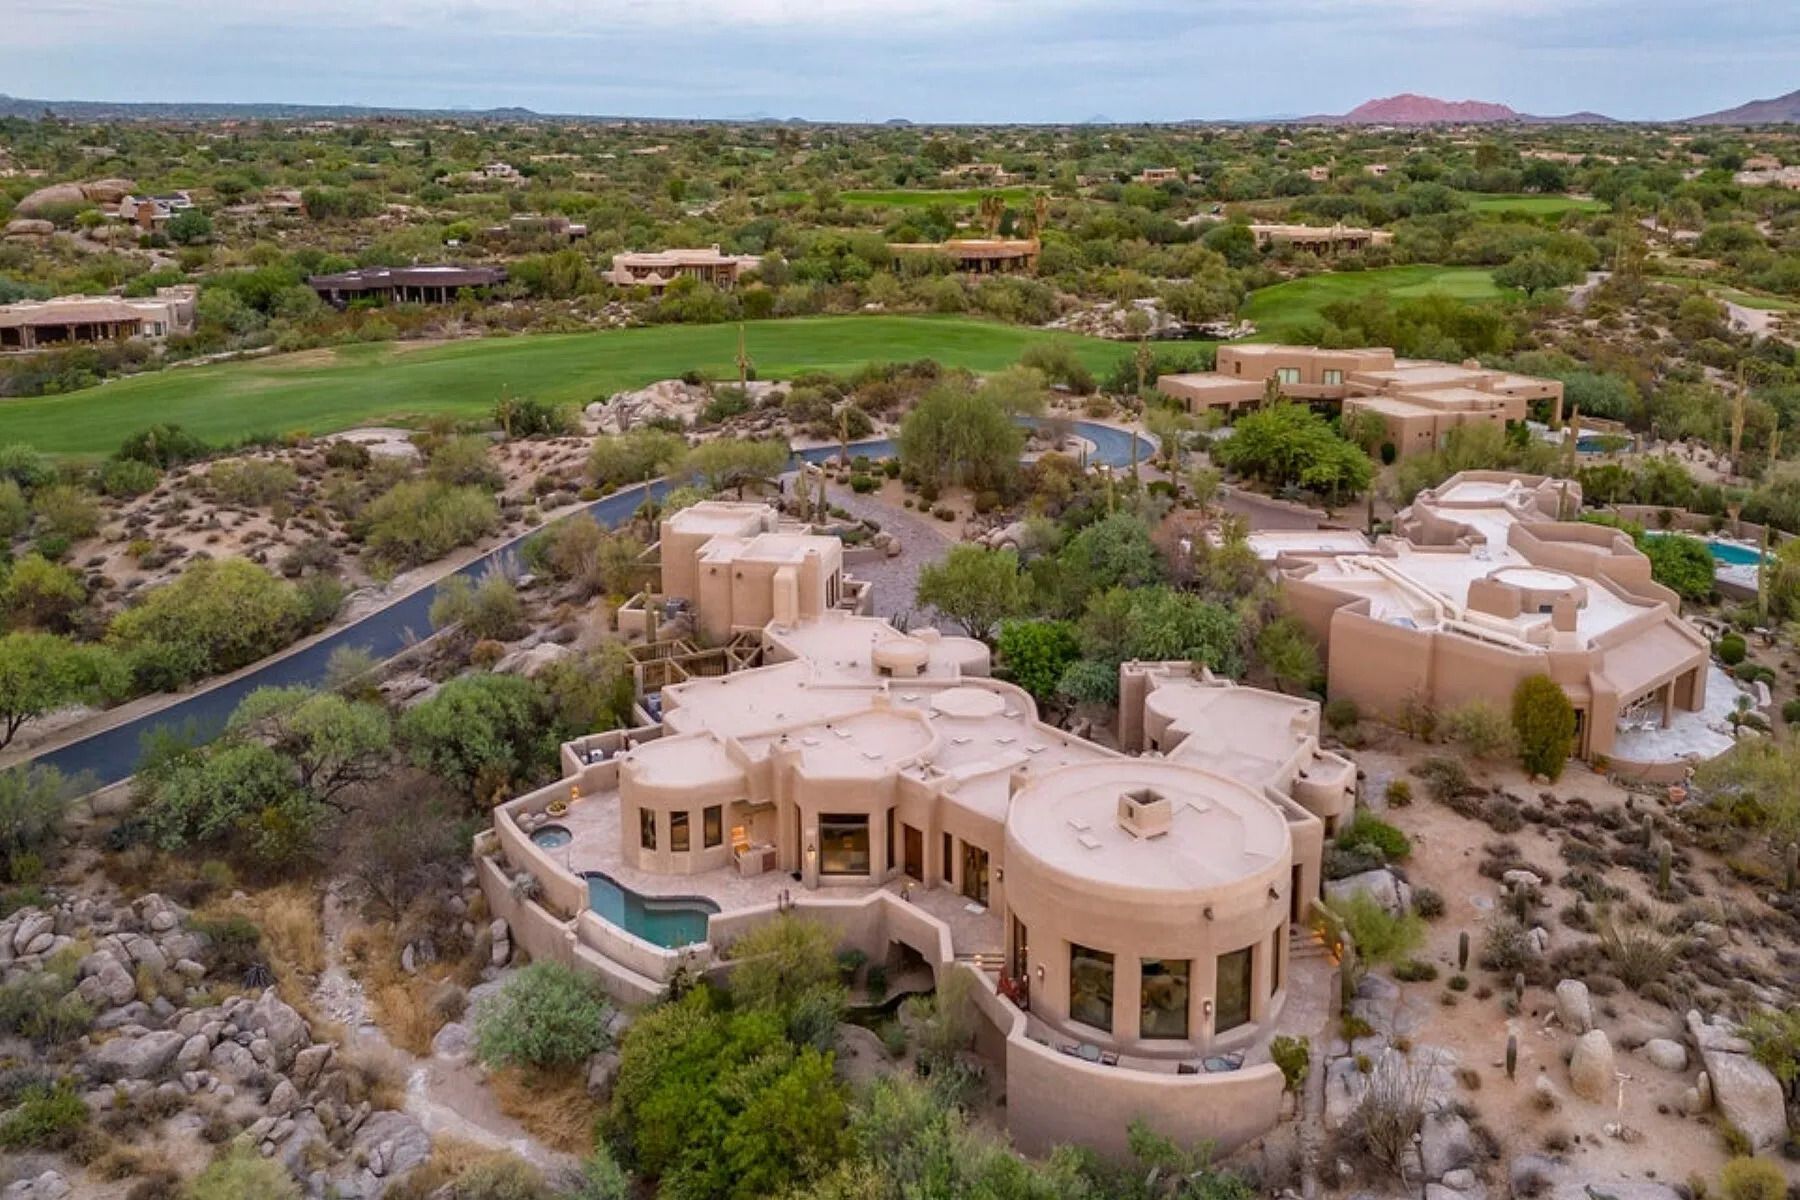 Дом в пустыне - продают жилье в глинобитном стиле среди дикой природы - Недвижимость